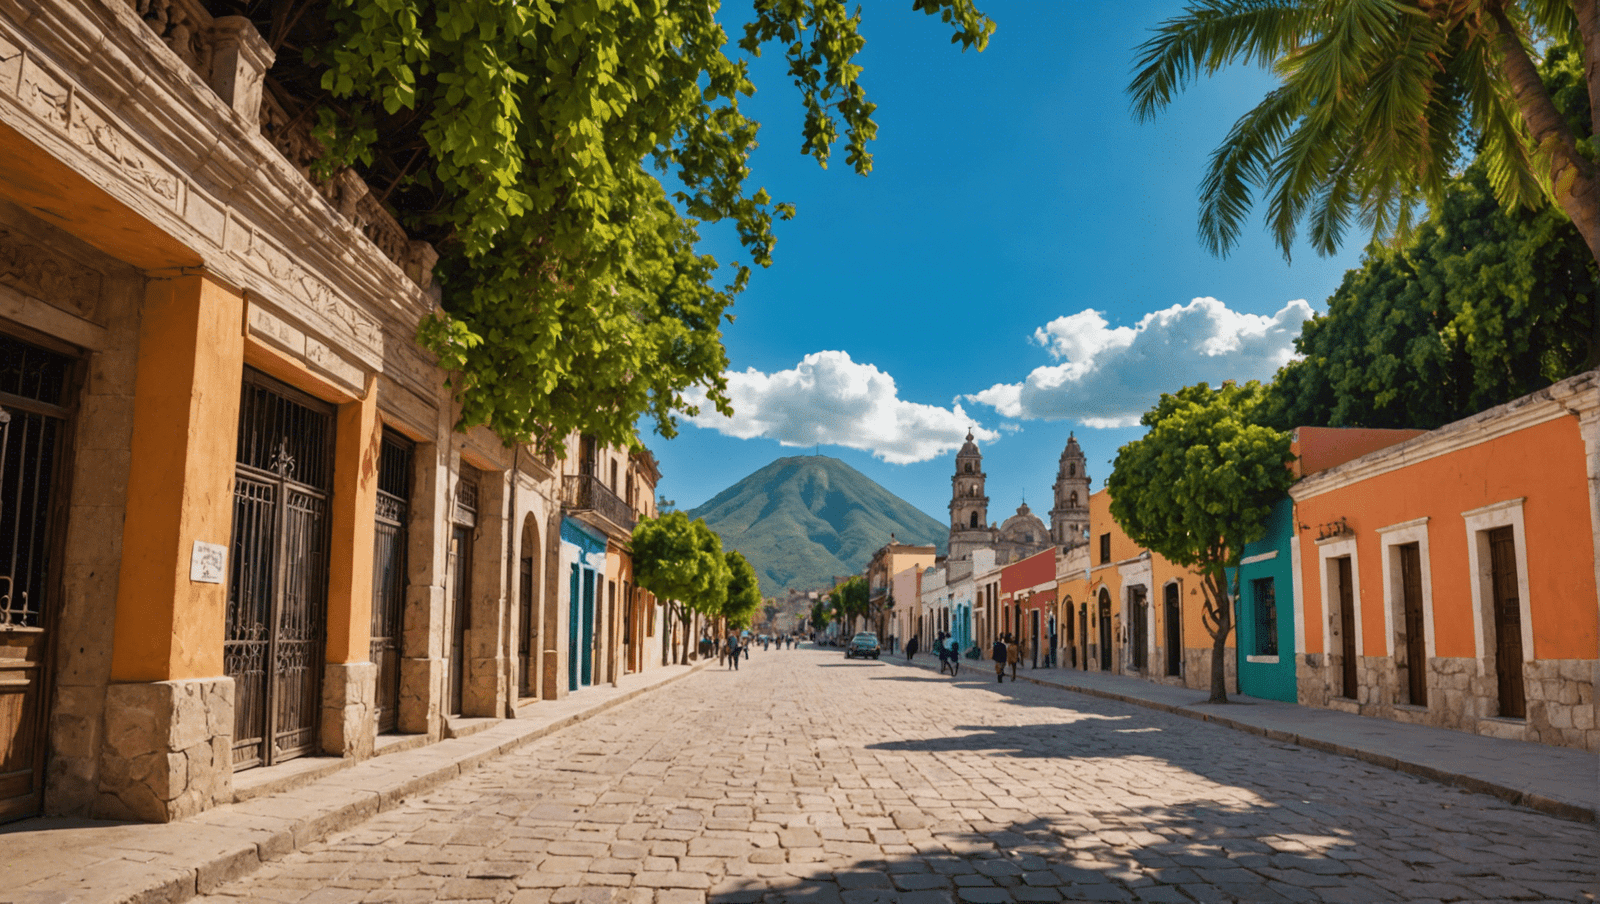 découvrez le mexique avec notre guide de voyage complet, incluant les meilleurs sites touristiques, les plats traditionnels et les conseils pour un séjour inoubliable.